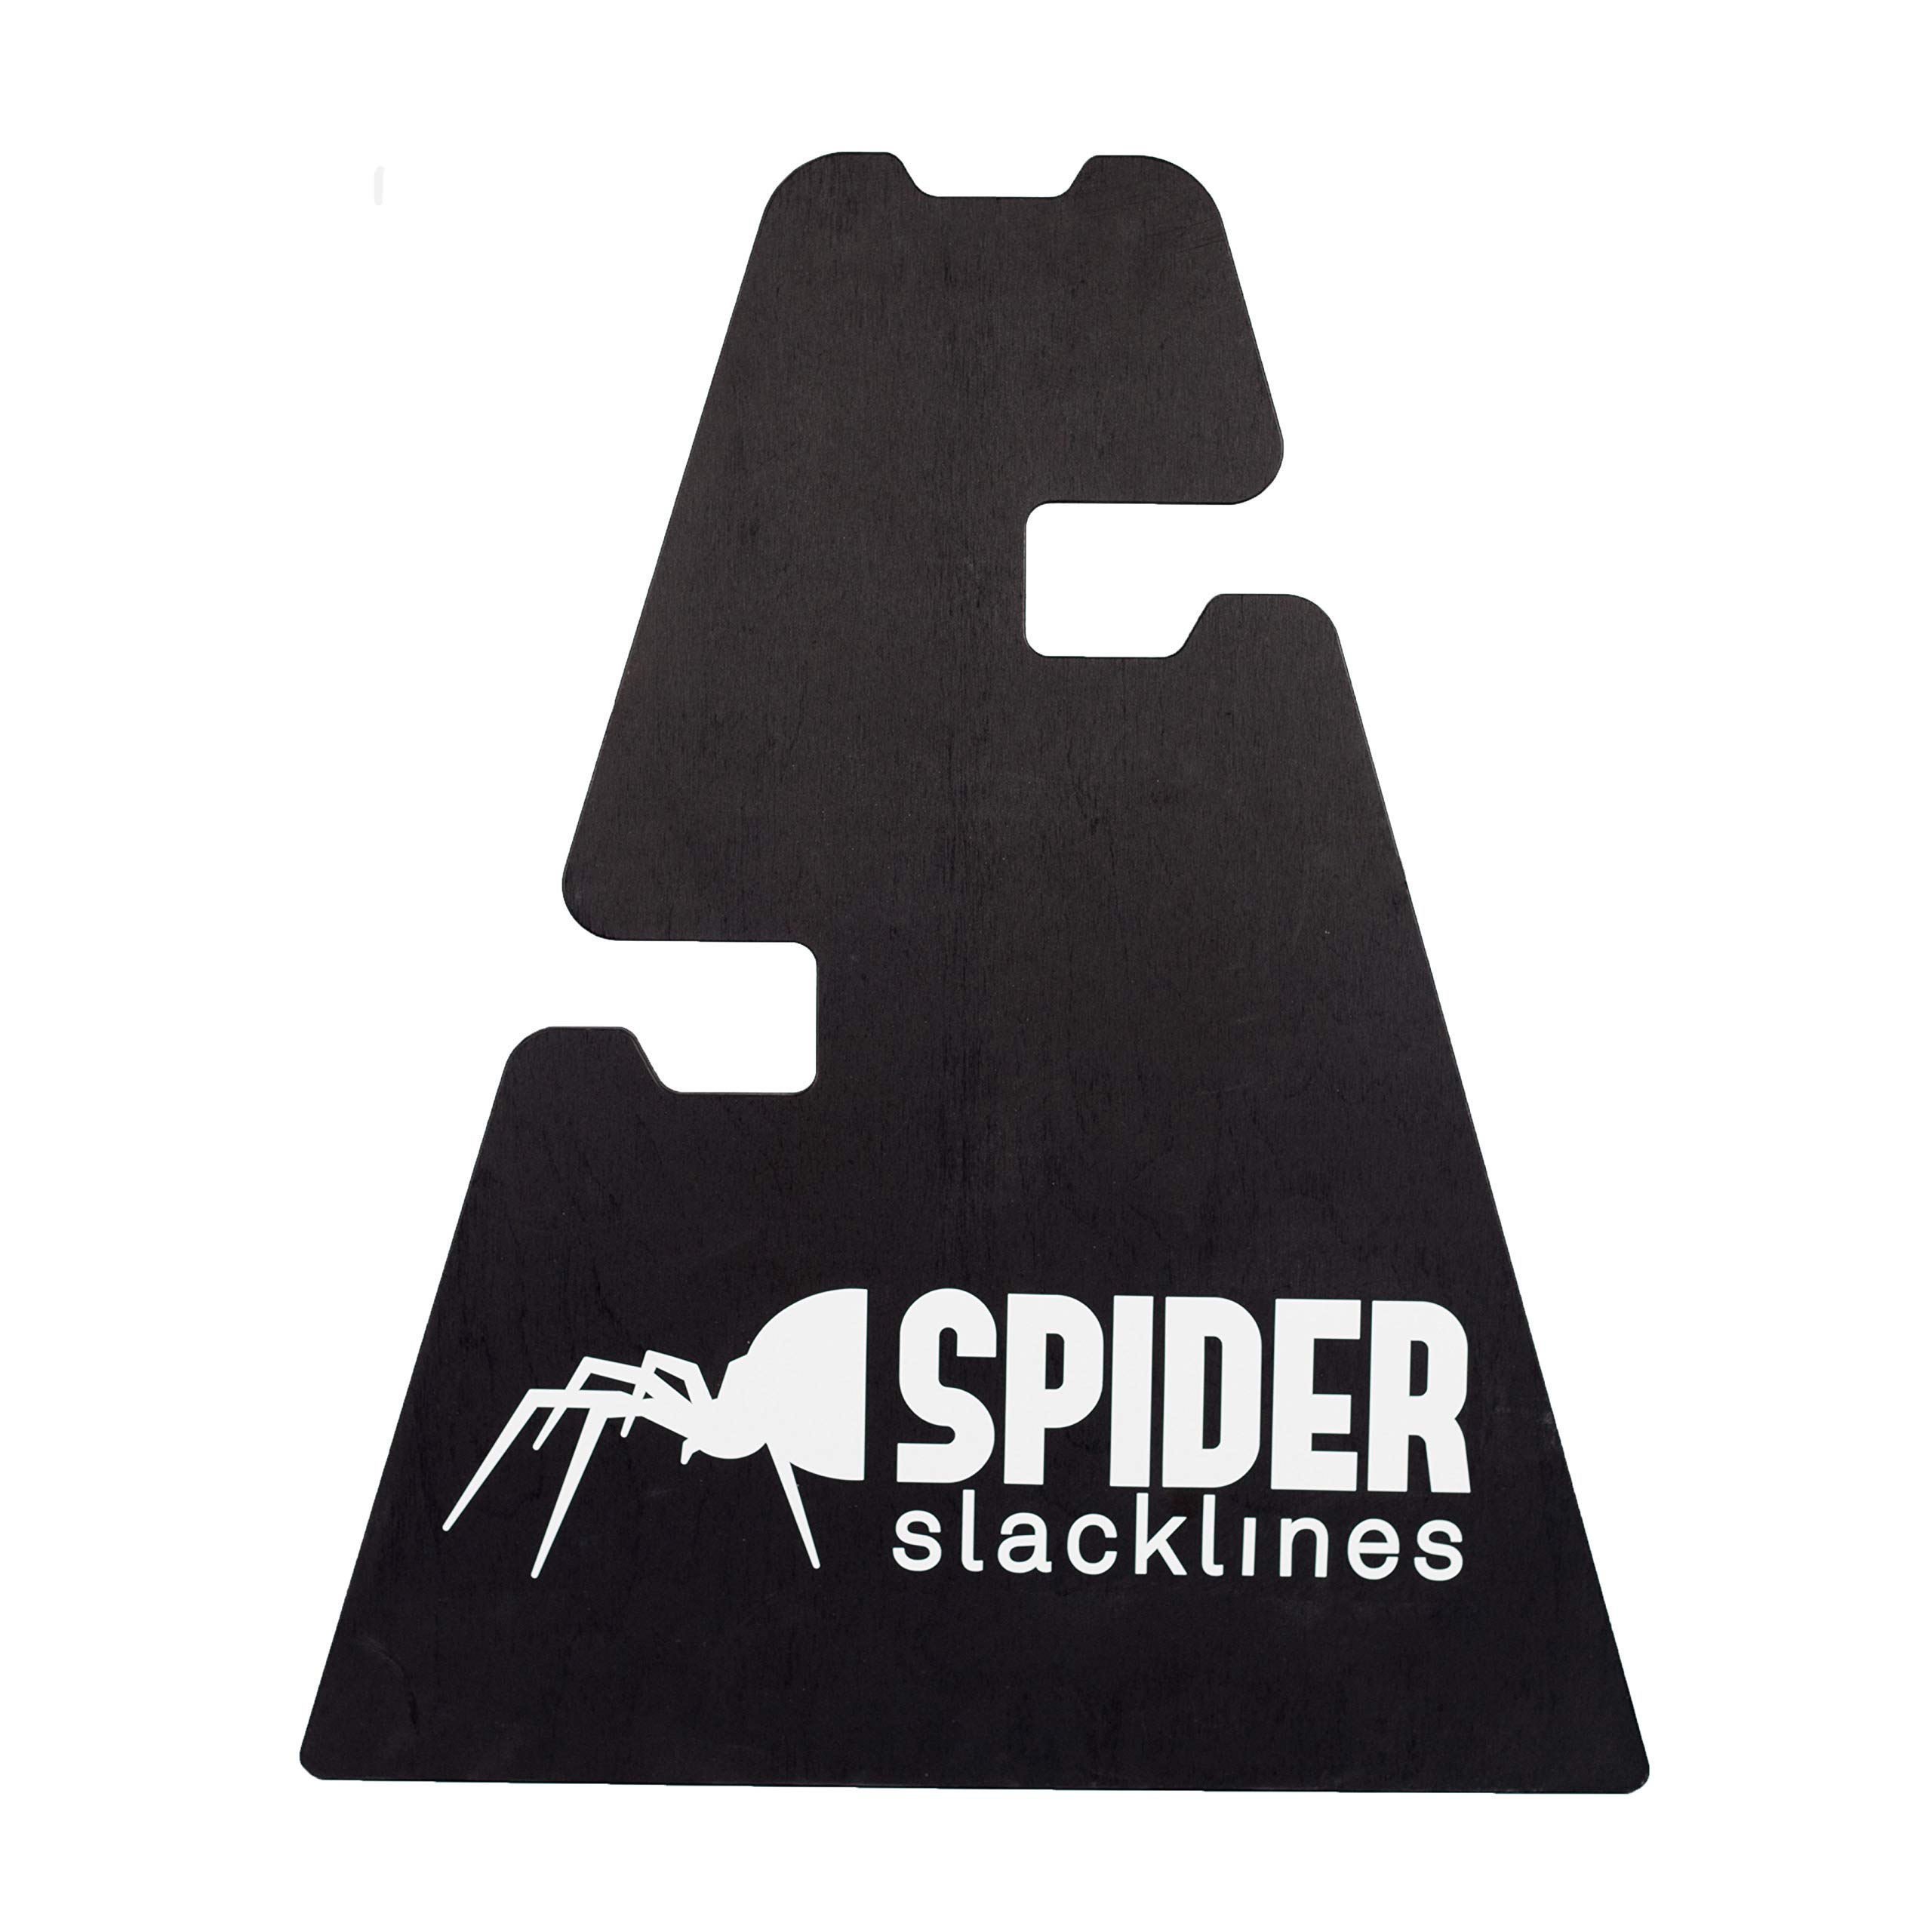 SPIDER SLACKLINE SIS05-3 Height Stand Slackline - Set 1x Holz Unterstützung - DREI Höheneinstellungen 30-50 - 70 cm - Slackline Zubehör, Boden - Made in Italien